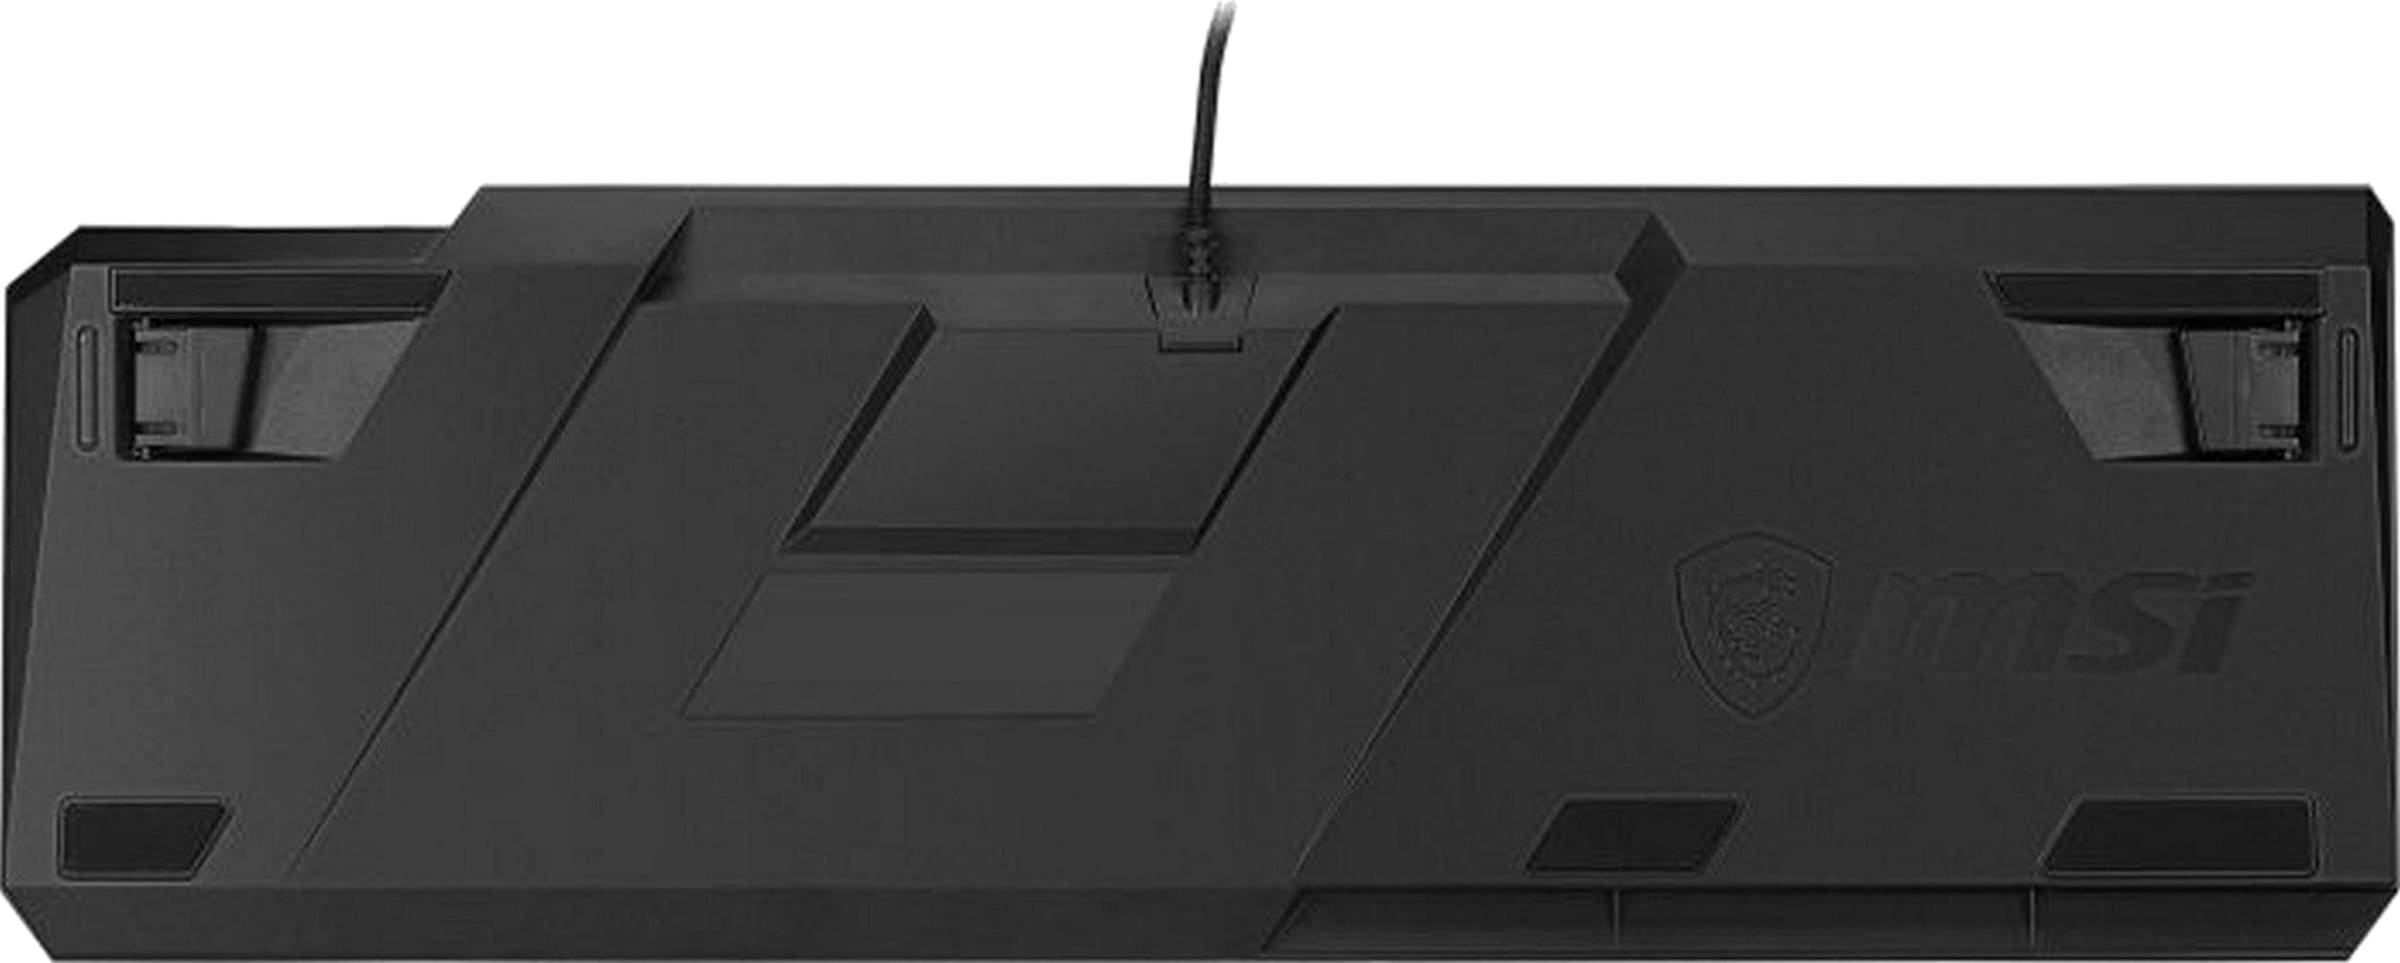 (Fn-Tasten-Multimedia-Tasten-Ziffernblock-ergonomische MSI UNIVERSAL Gaming-Tastatur online GK50 | LOW PROFILE«, »VIGOR Form-LCD-Anzeige) kaufen